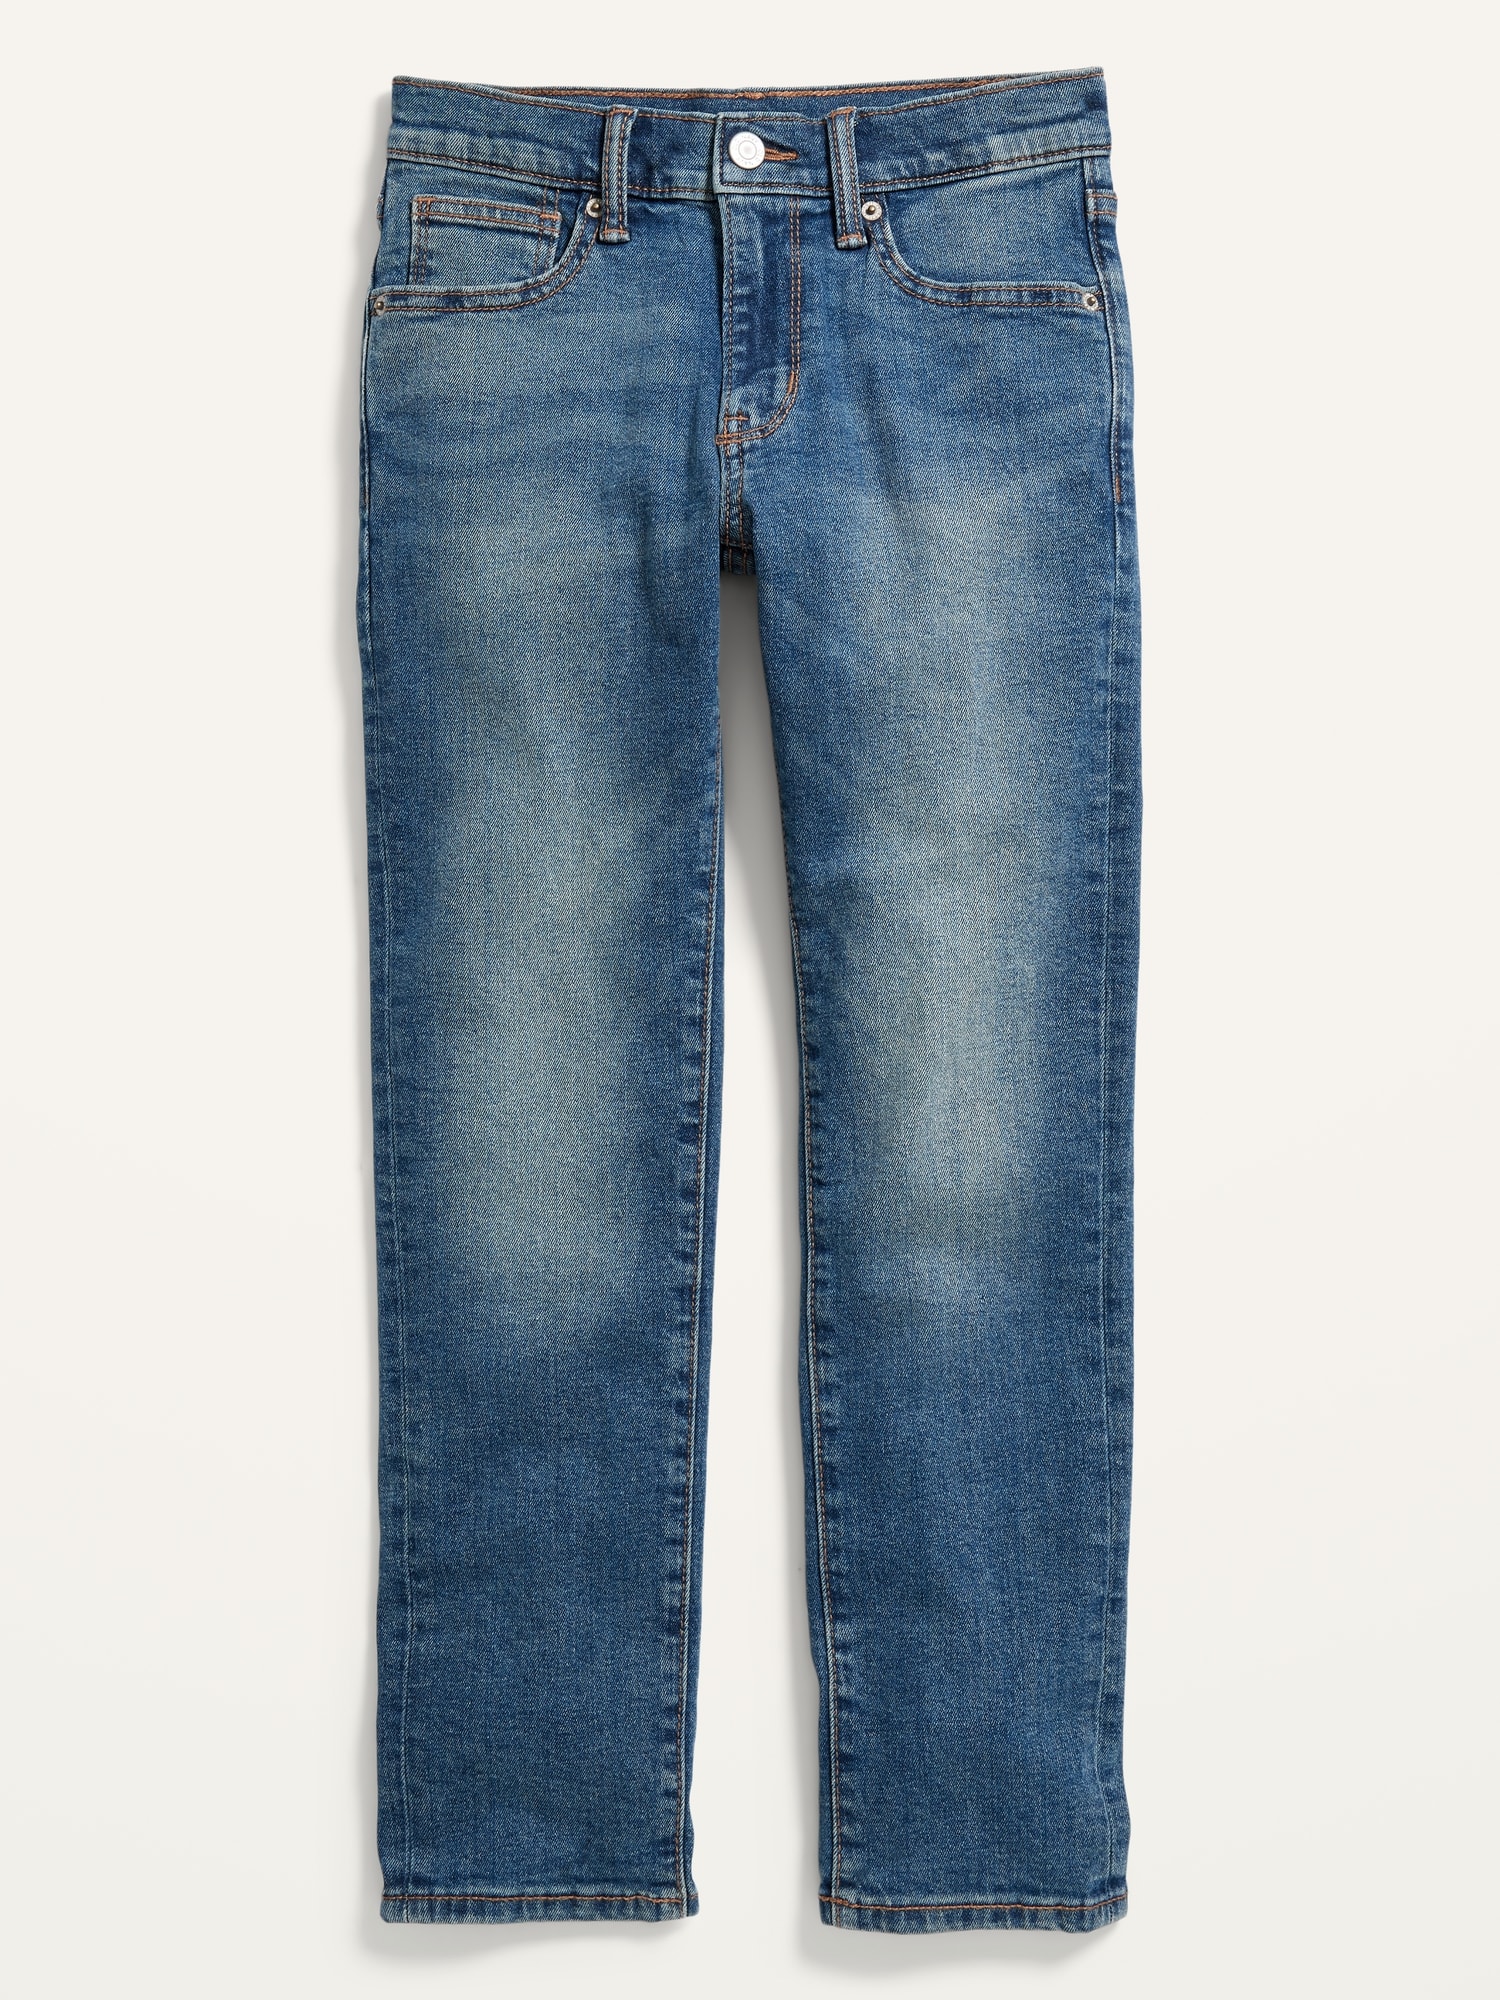 Built-In Flex Skinny Jeans For Boys